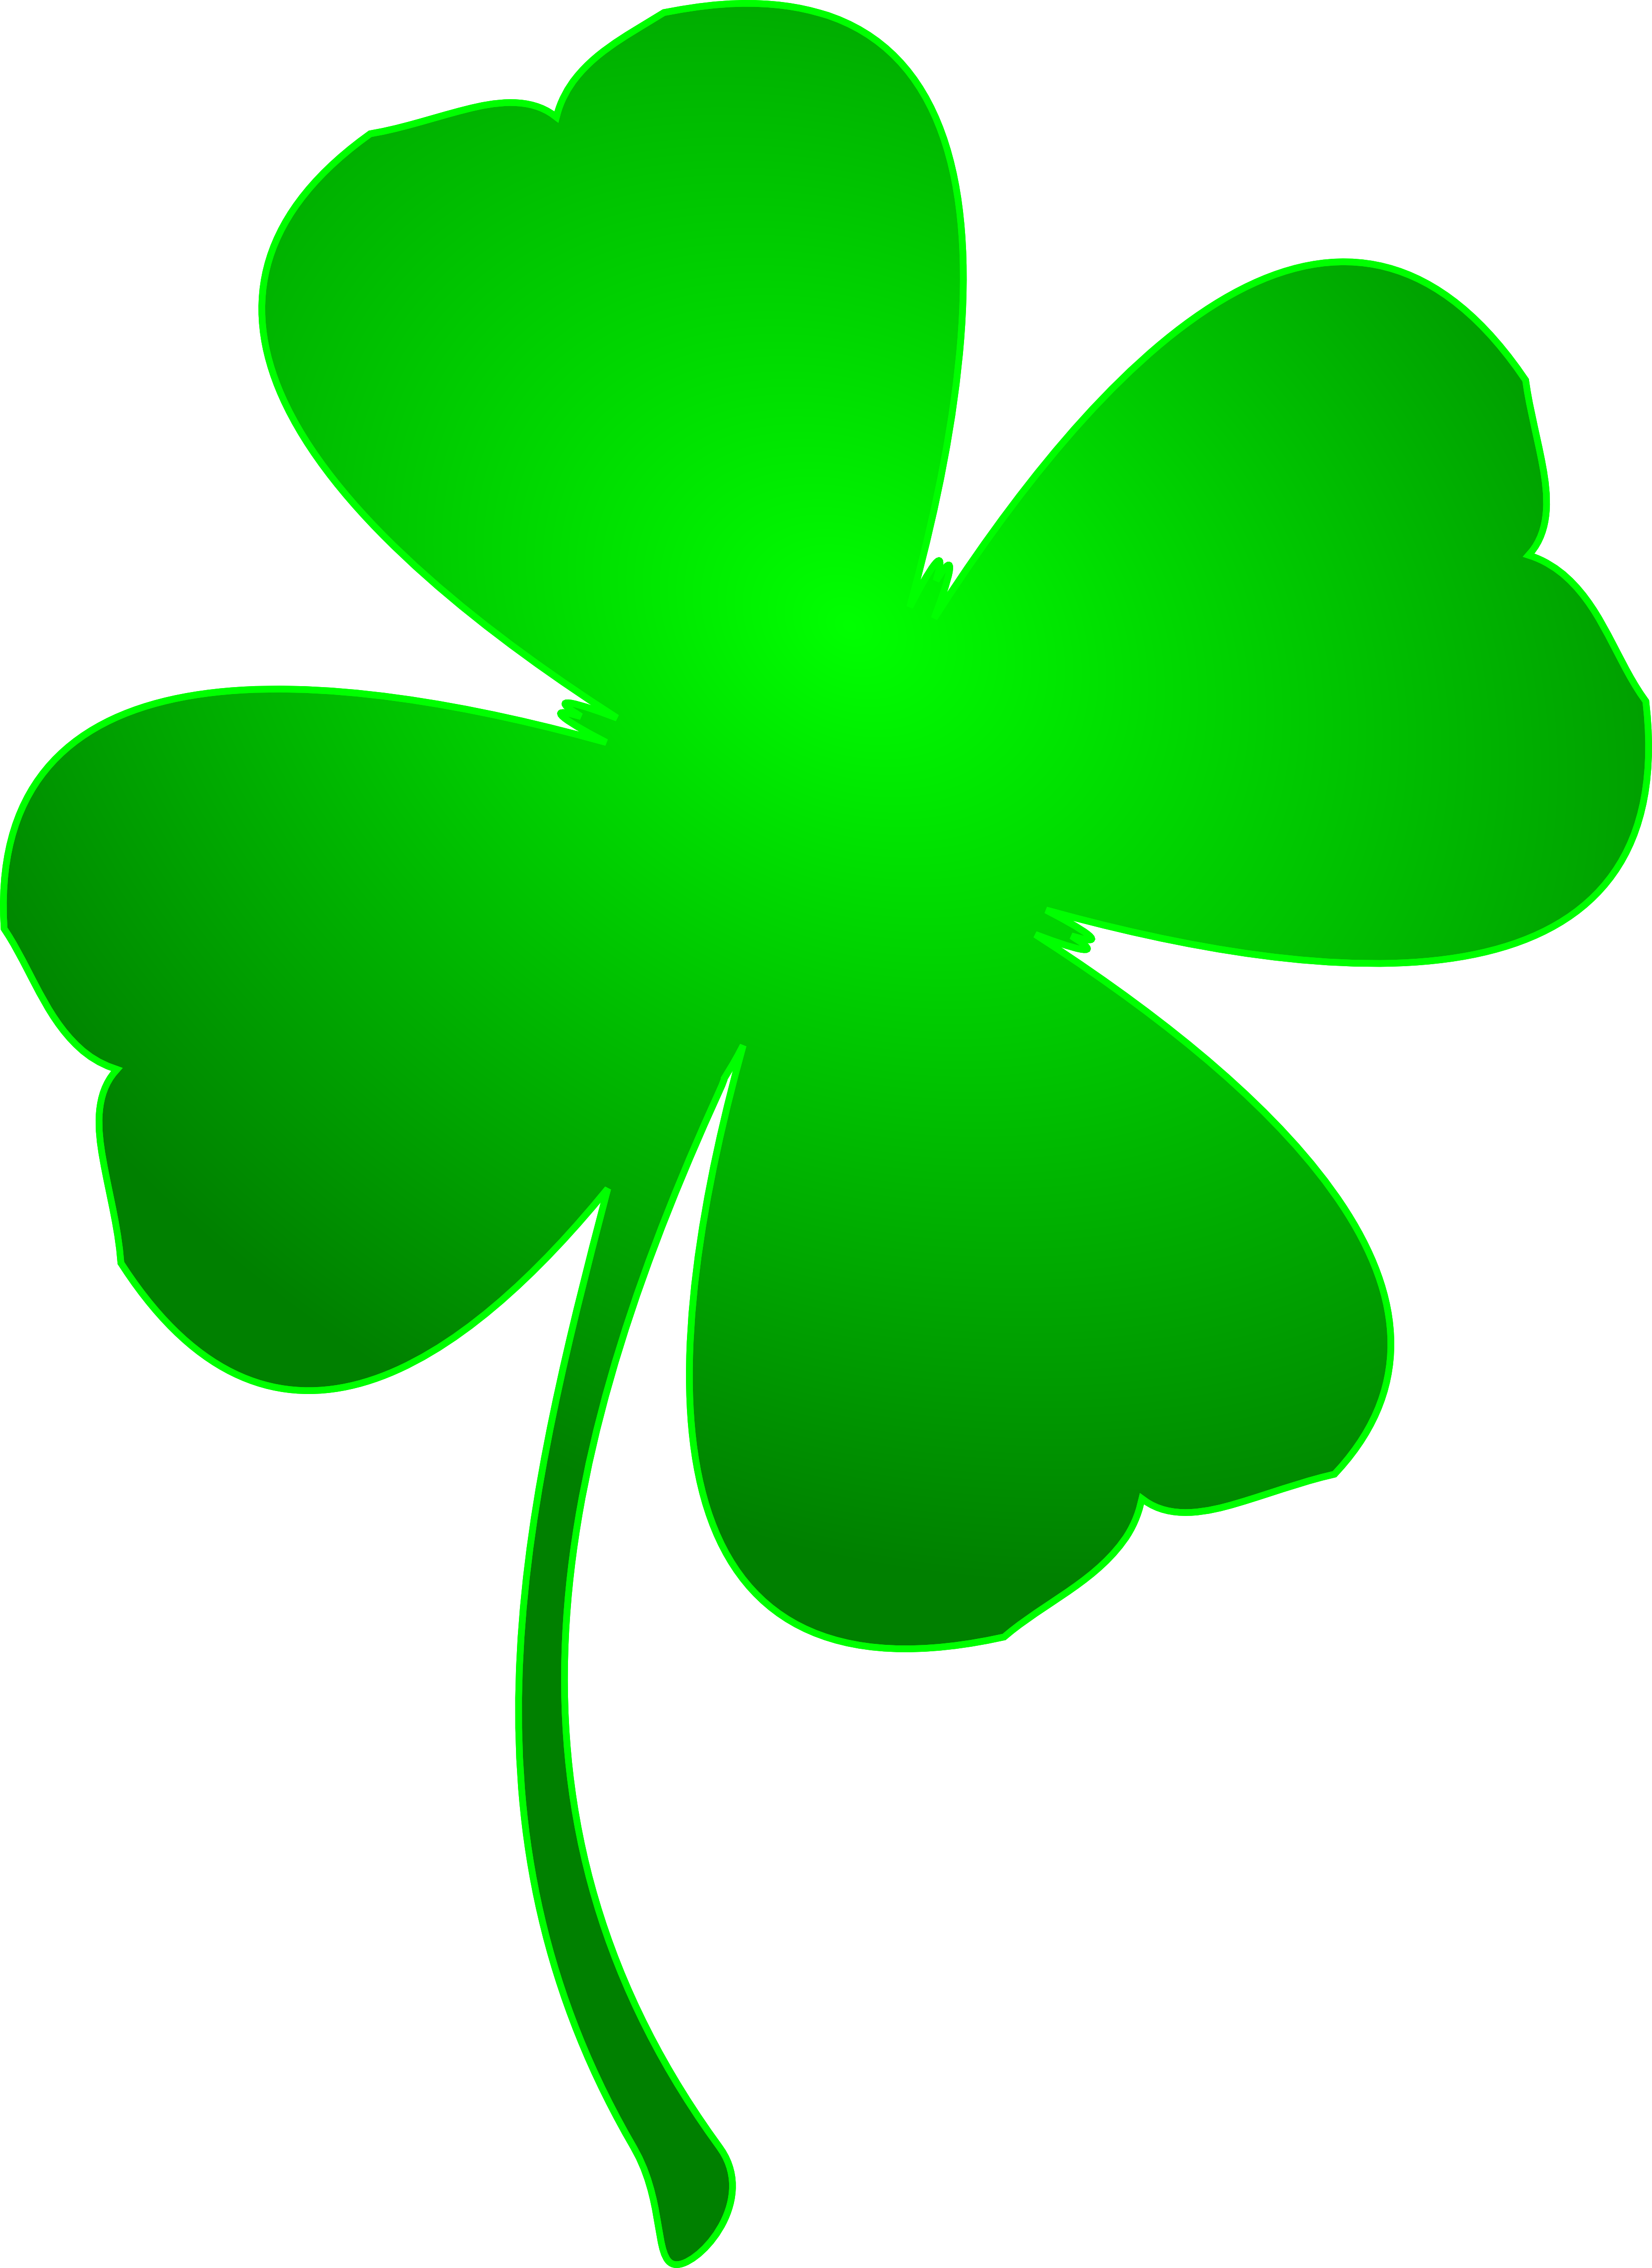 Картинка на 4 листа. Клевер Шамрок Шемрок четырехлистный. Ирландия Клевер четырехлистный. Четырёхлистный Клевер символ Ирландии. Четырёхлистный Клевер символ удачи.